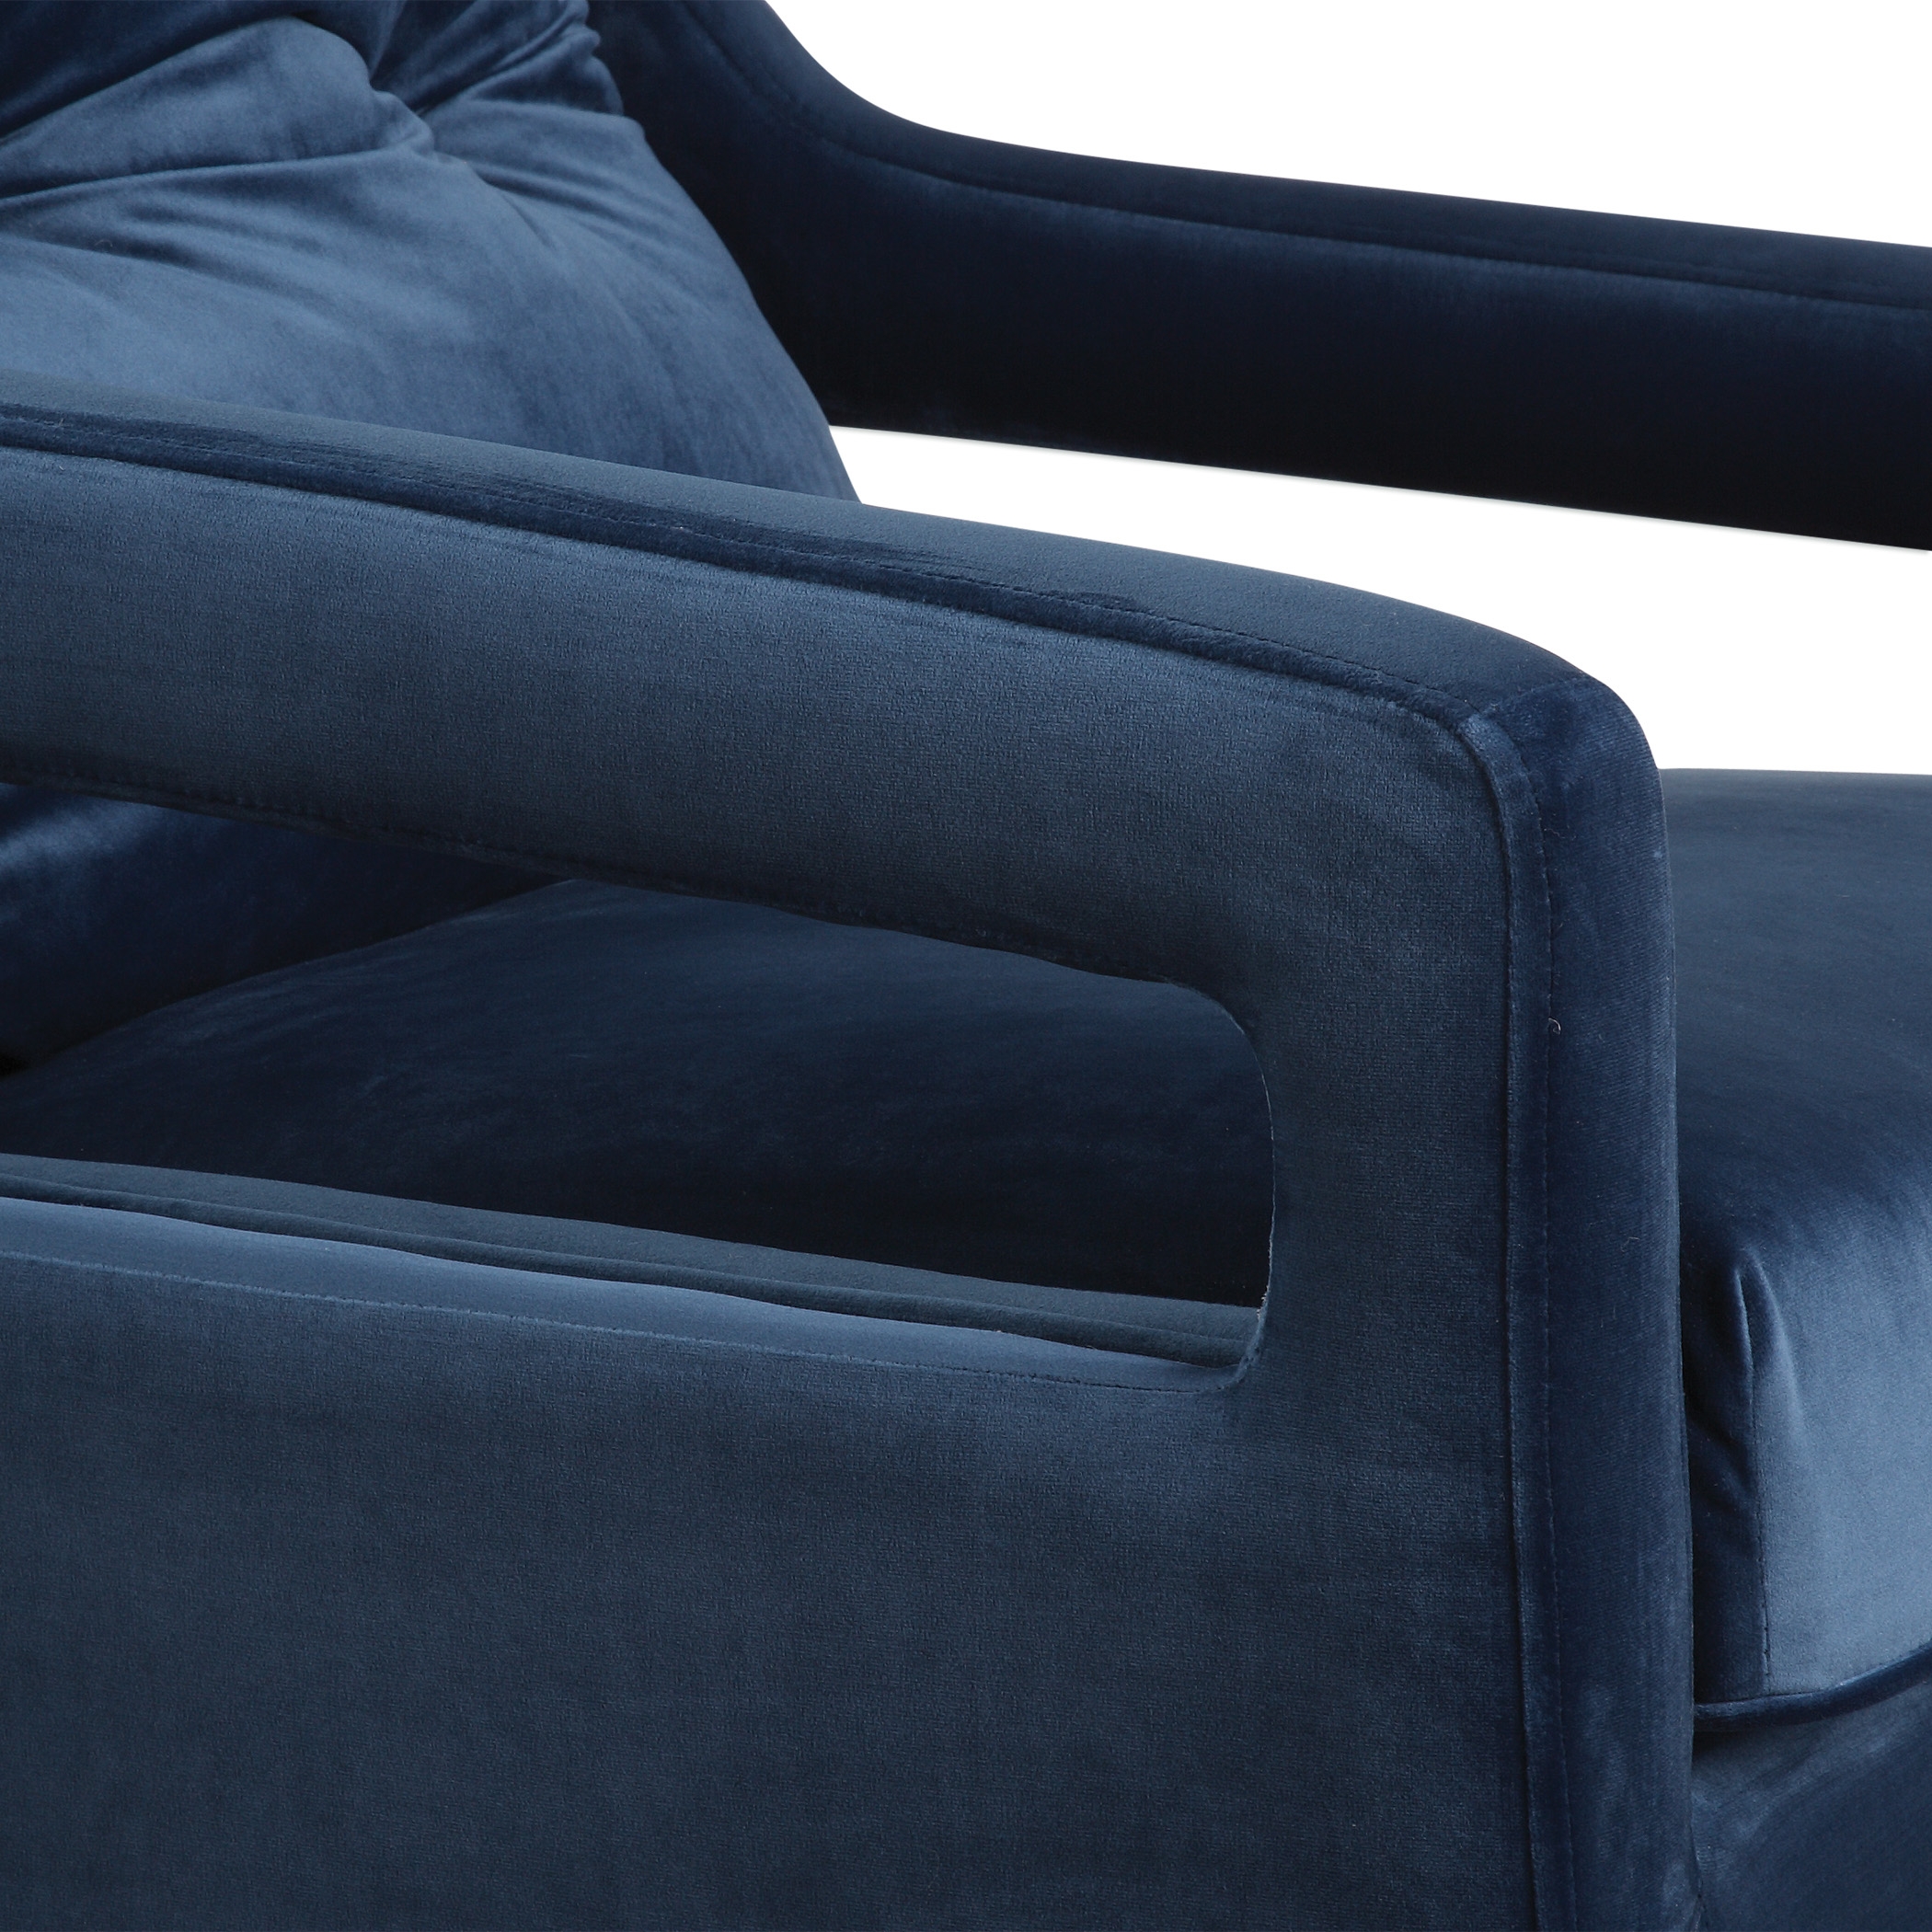 O'Brien Blue Velvet Armchair - Image 3